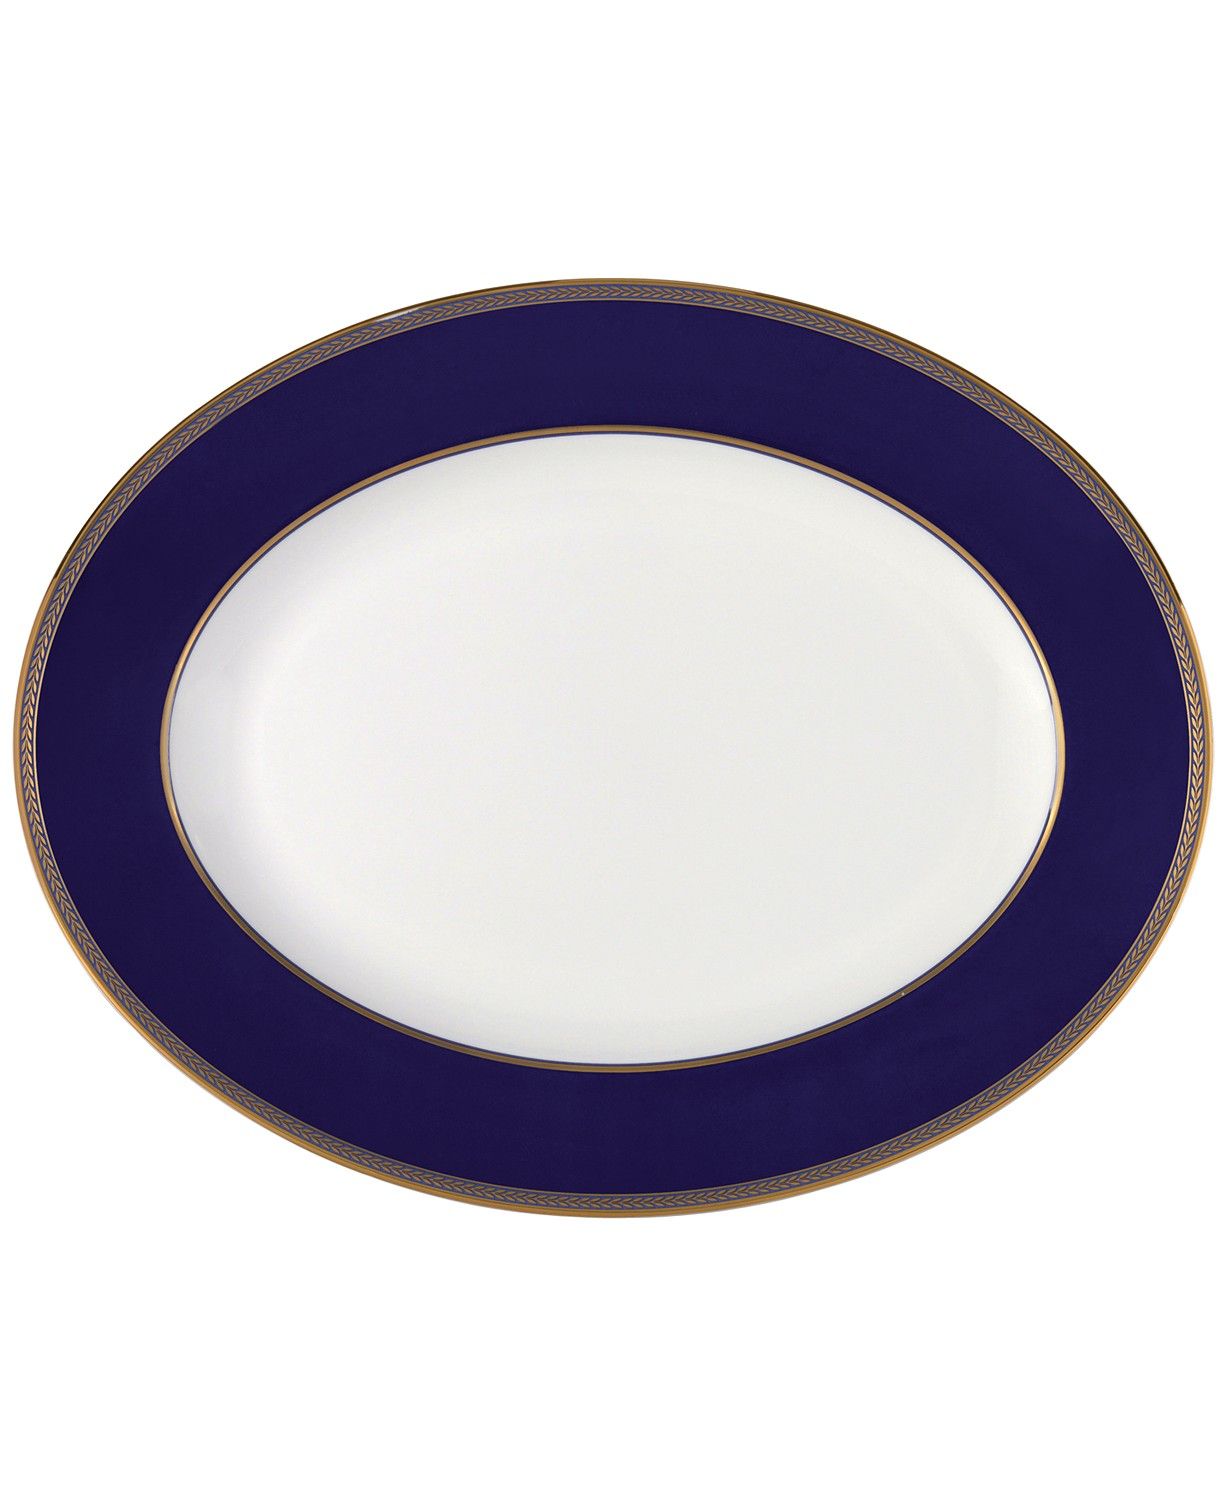 Renaissance Gold Oval Platter, 13.75"